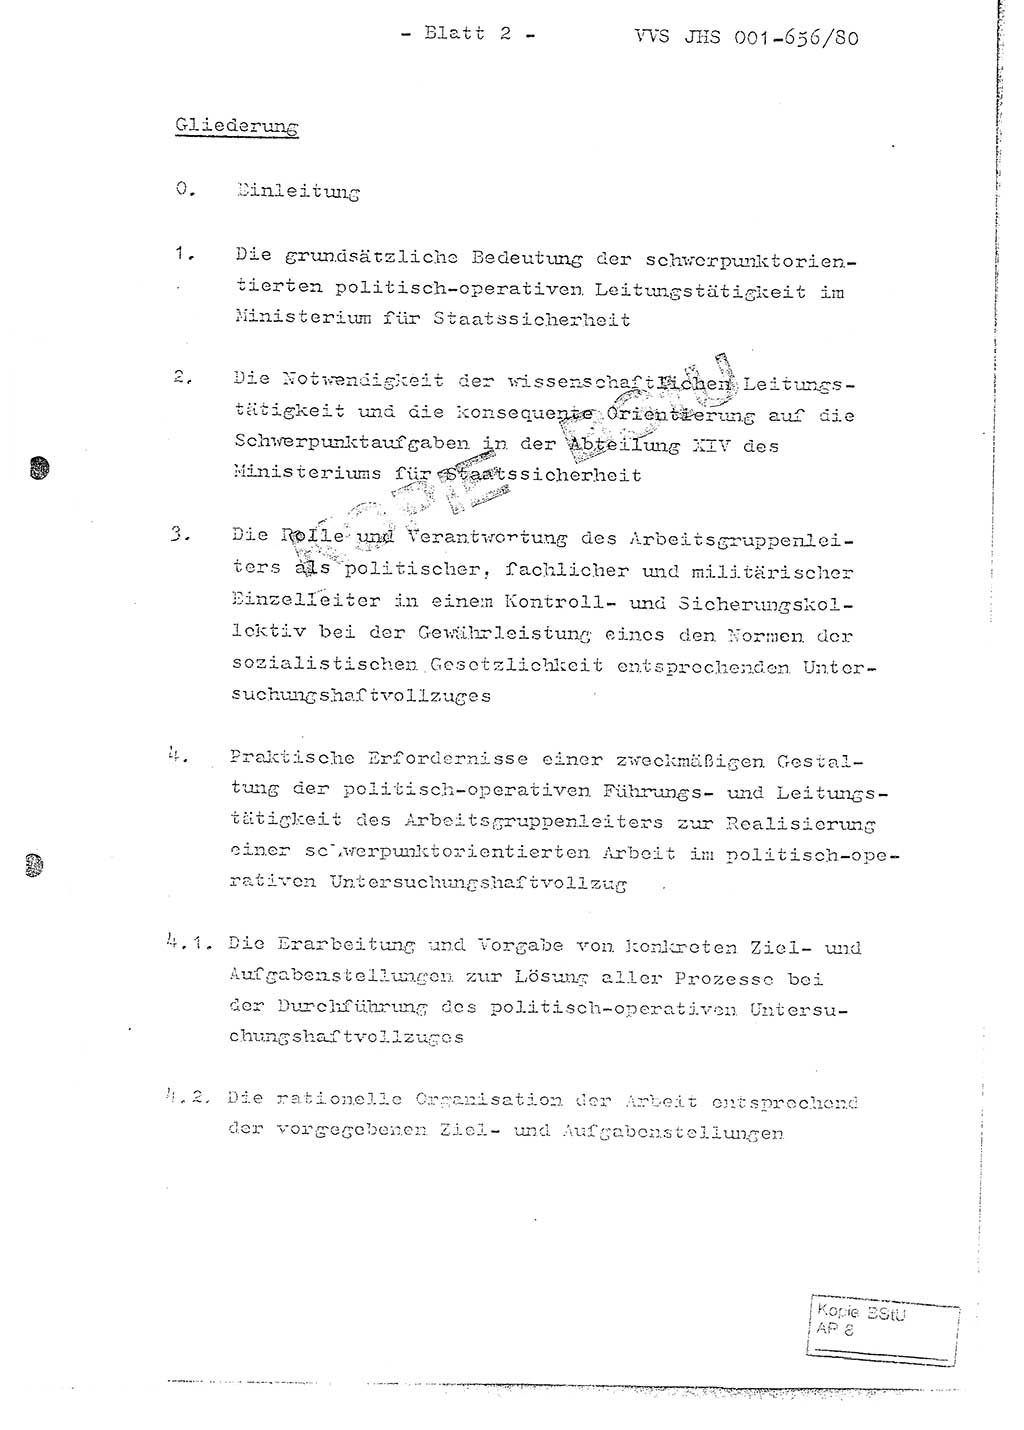 Fachschulabschlußarbeit Unterleutnant Christian Kätzel (Abt. ⅩⅣ), Ministerium für Staatssicherheit (MfS) [Deutsche Demokratische Republik (DDR)], Juristische Hochschule (JHS), Vertrauliche Verschlußsache (VVS) 001-656/80, Potsdam 1980, Blatt 2 (FS-Abschl.-Arb. MfS DDR JHS VVS 001-656/80 1980, Bl. 2)